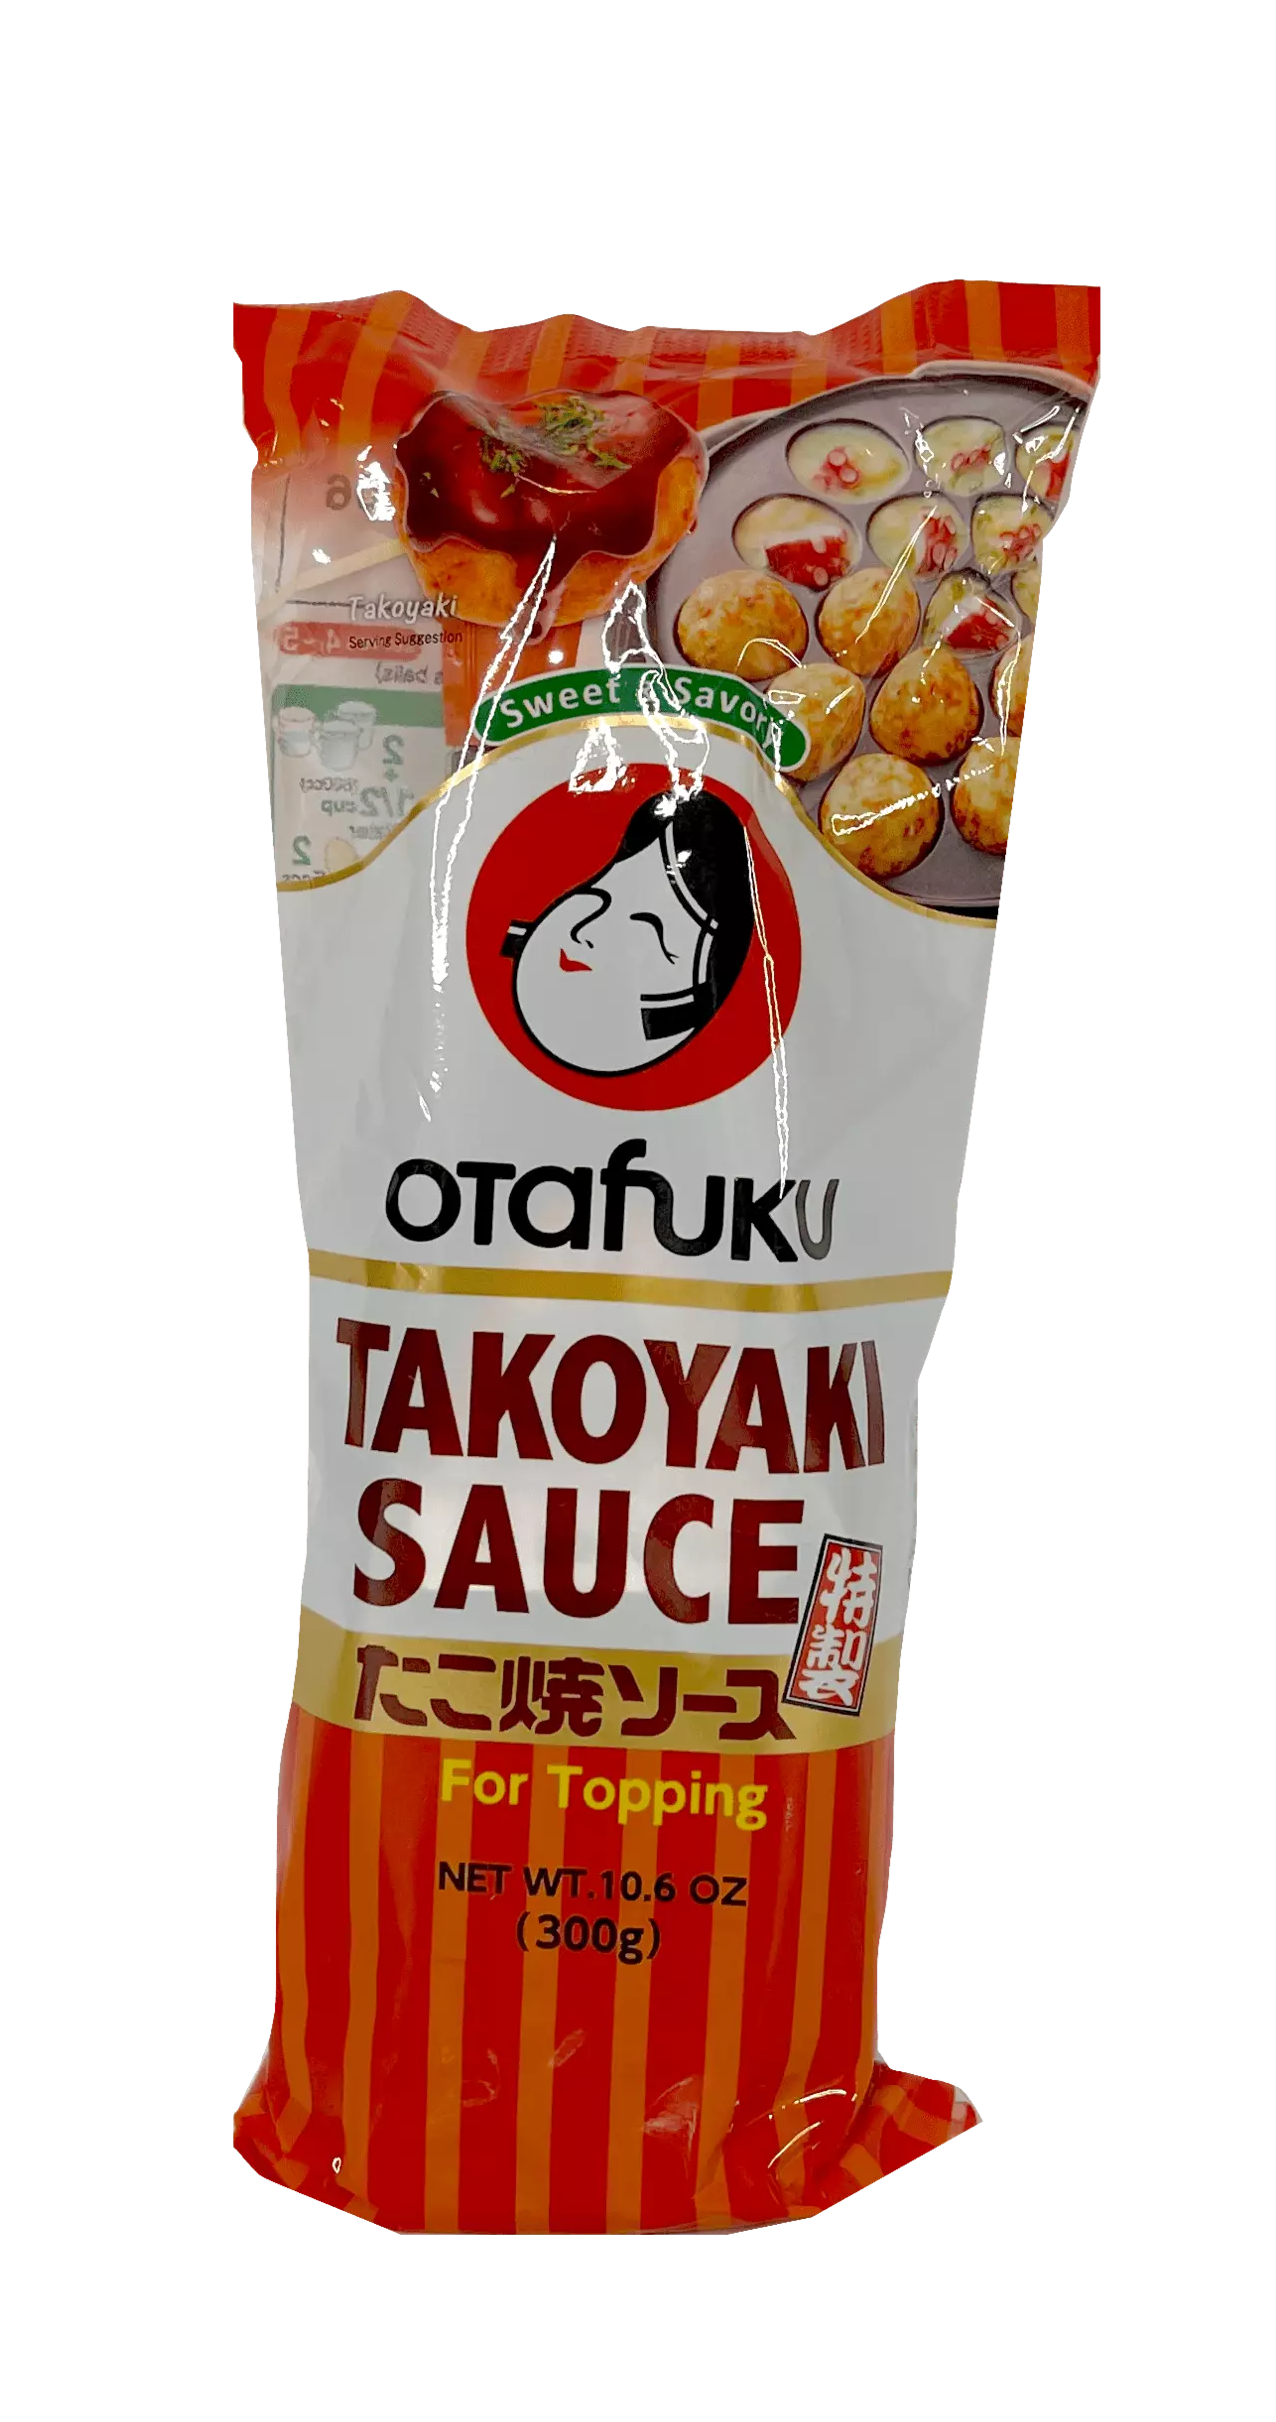 Takoyaki Sauce 300g Otafuku Japan